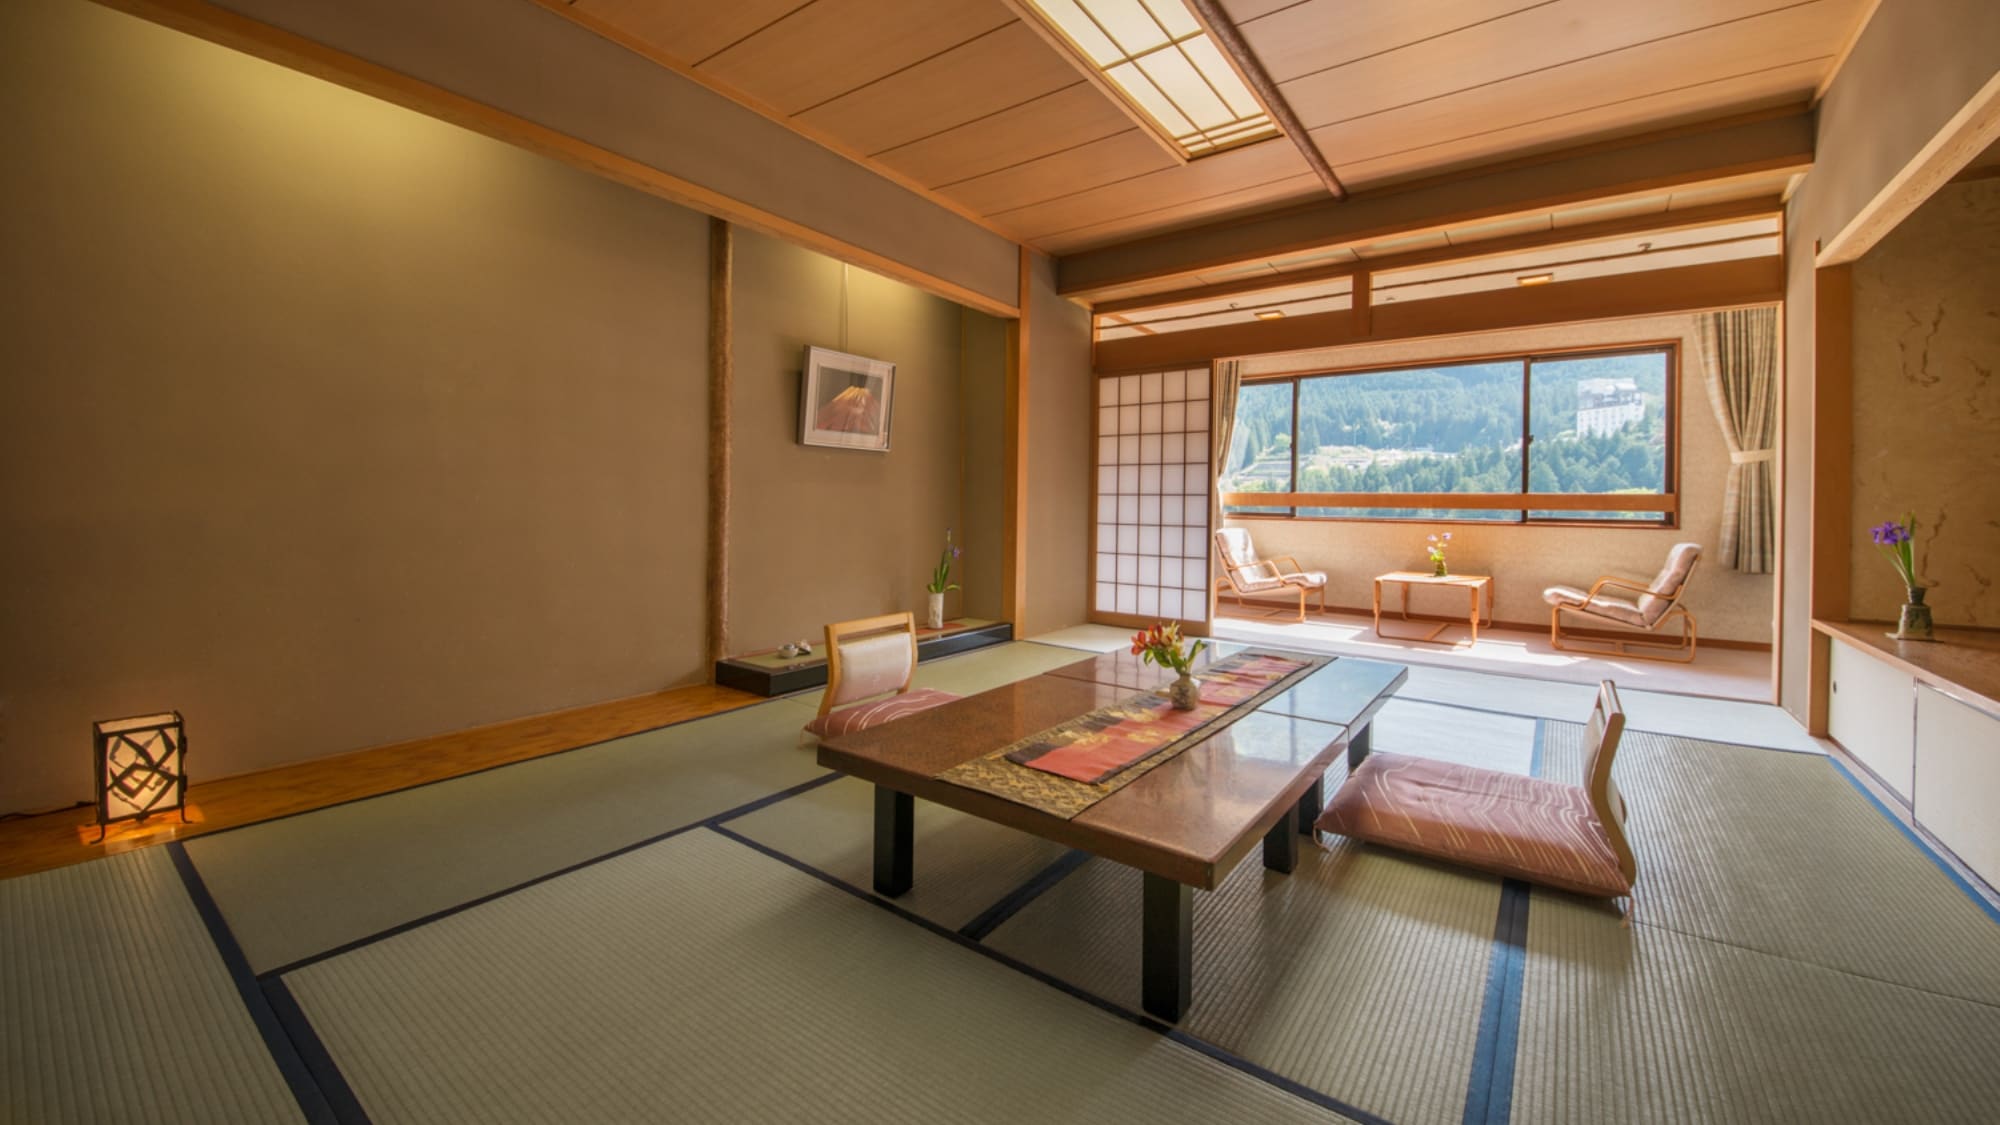 ตัวอย่างห้องพักขนาดใหญ่คันโซ (ห้องสไตล์ญี่ปุ่น 12 เสื่อทาทามิ)